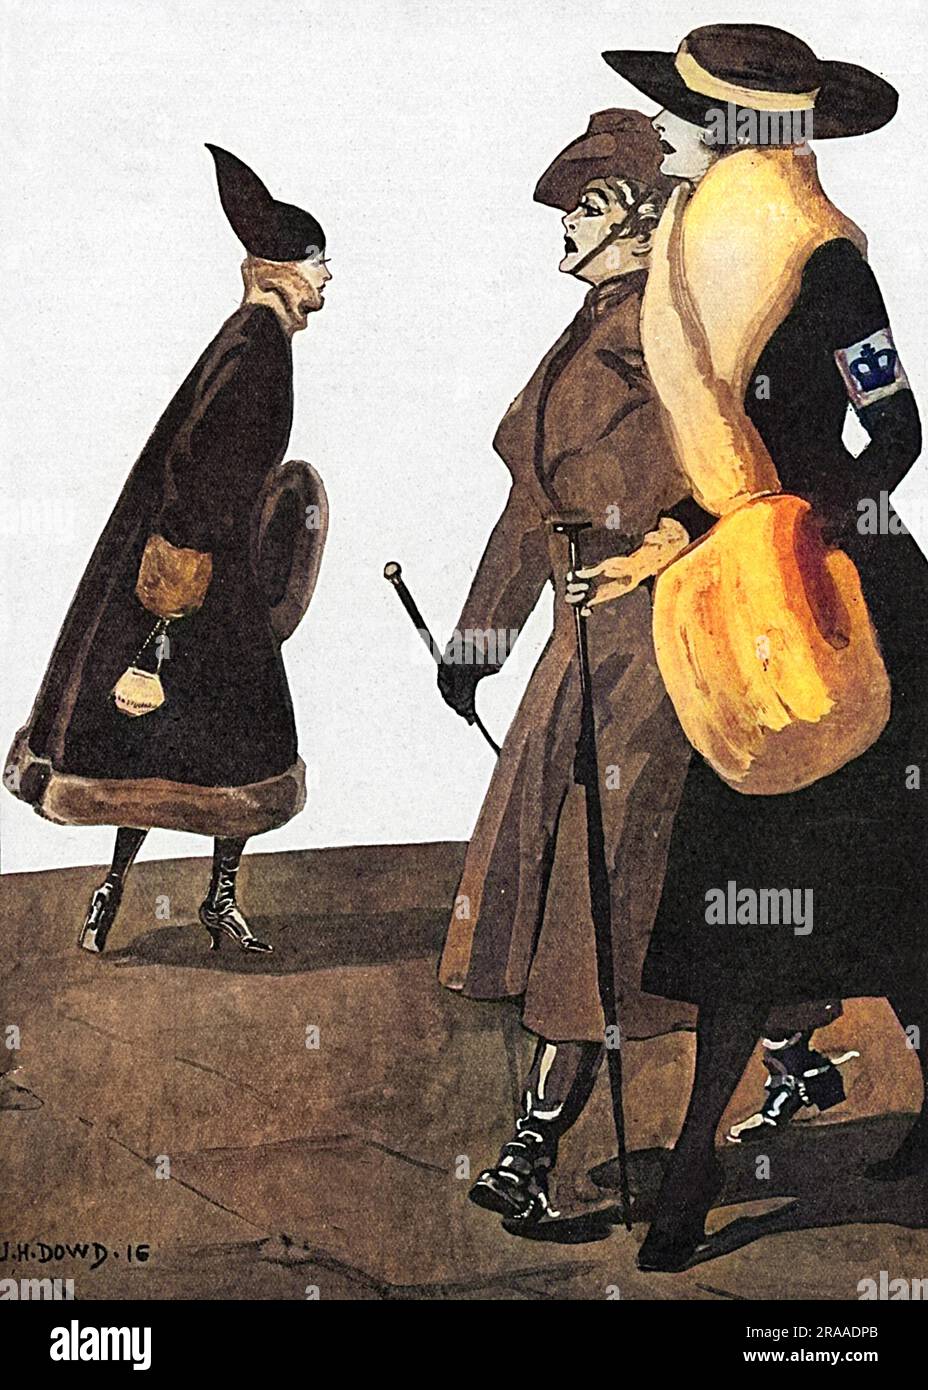 Un'illustrazione di due donne che contribuiscono allo sforzo di guerra, mostrata dal loro vestito militare, denominando un'altra donna che non sta aiutando un 'slacker '. Data: 1916 Foto Stock